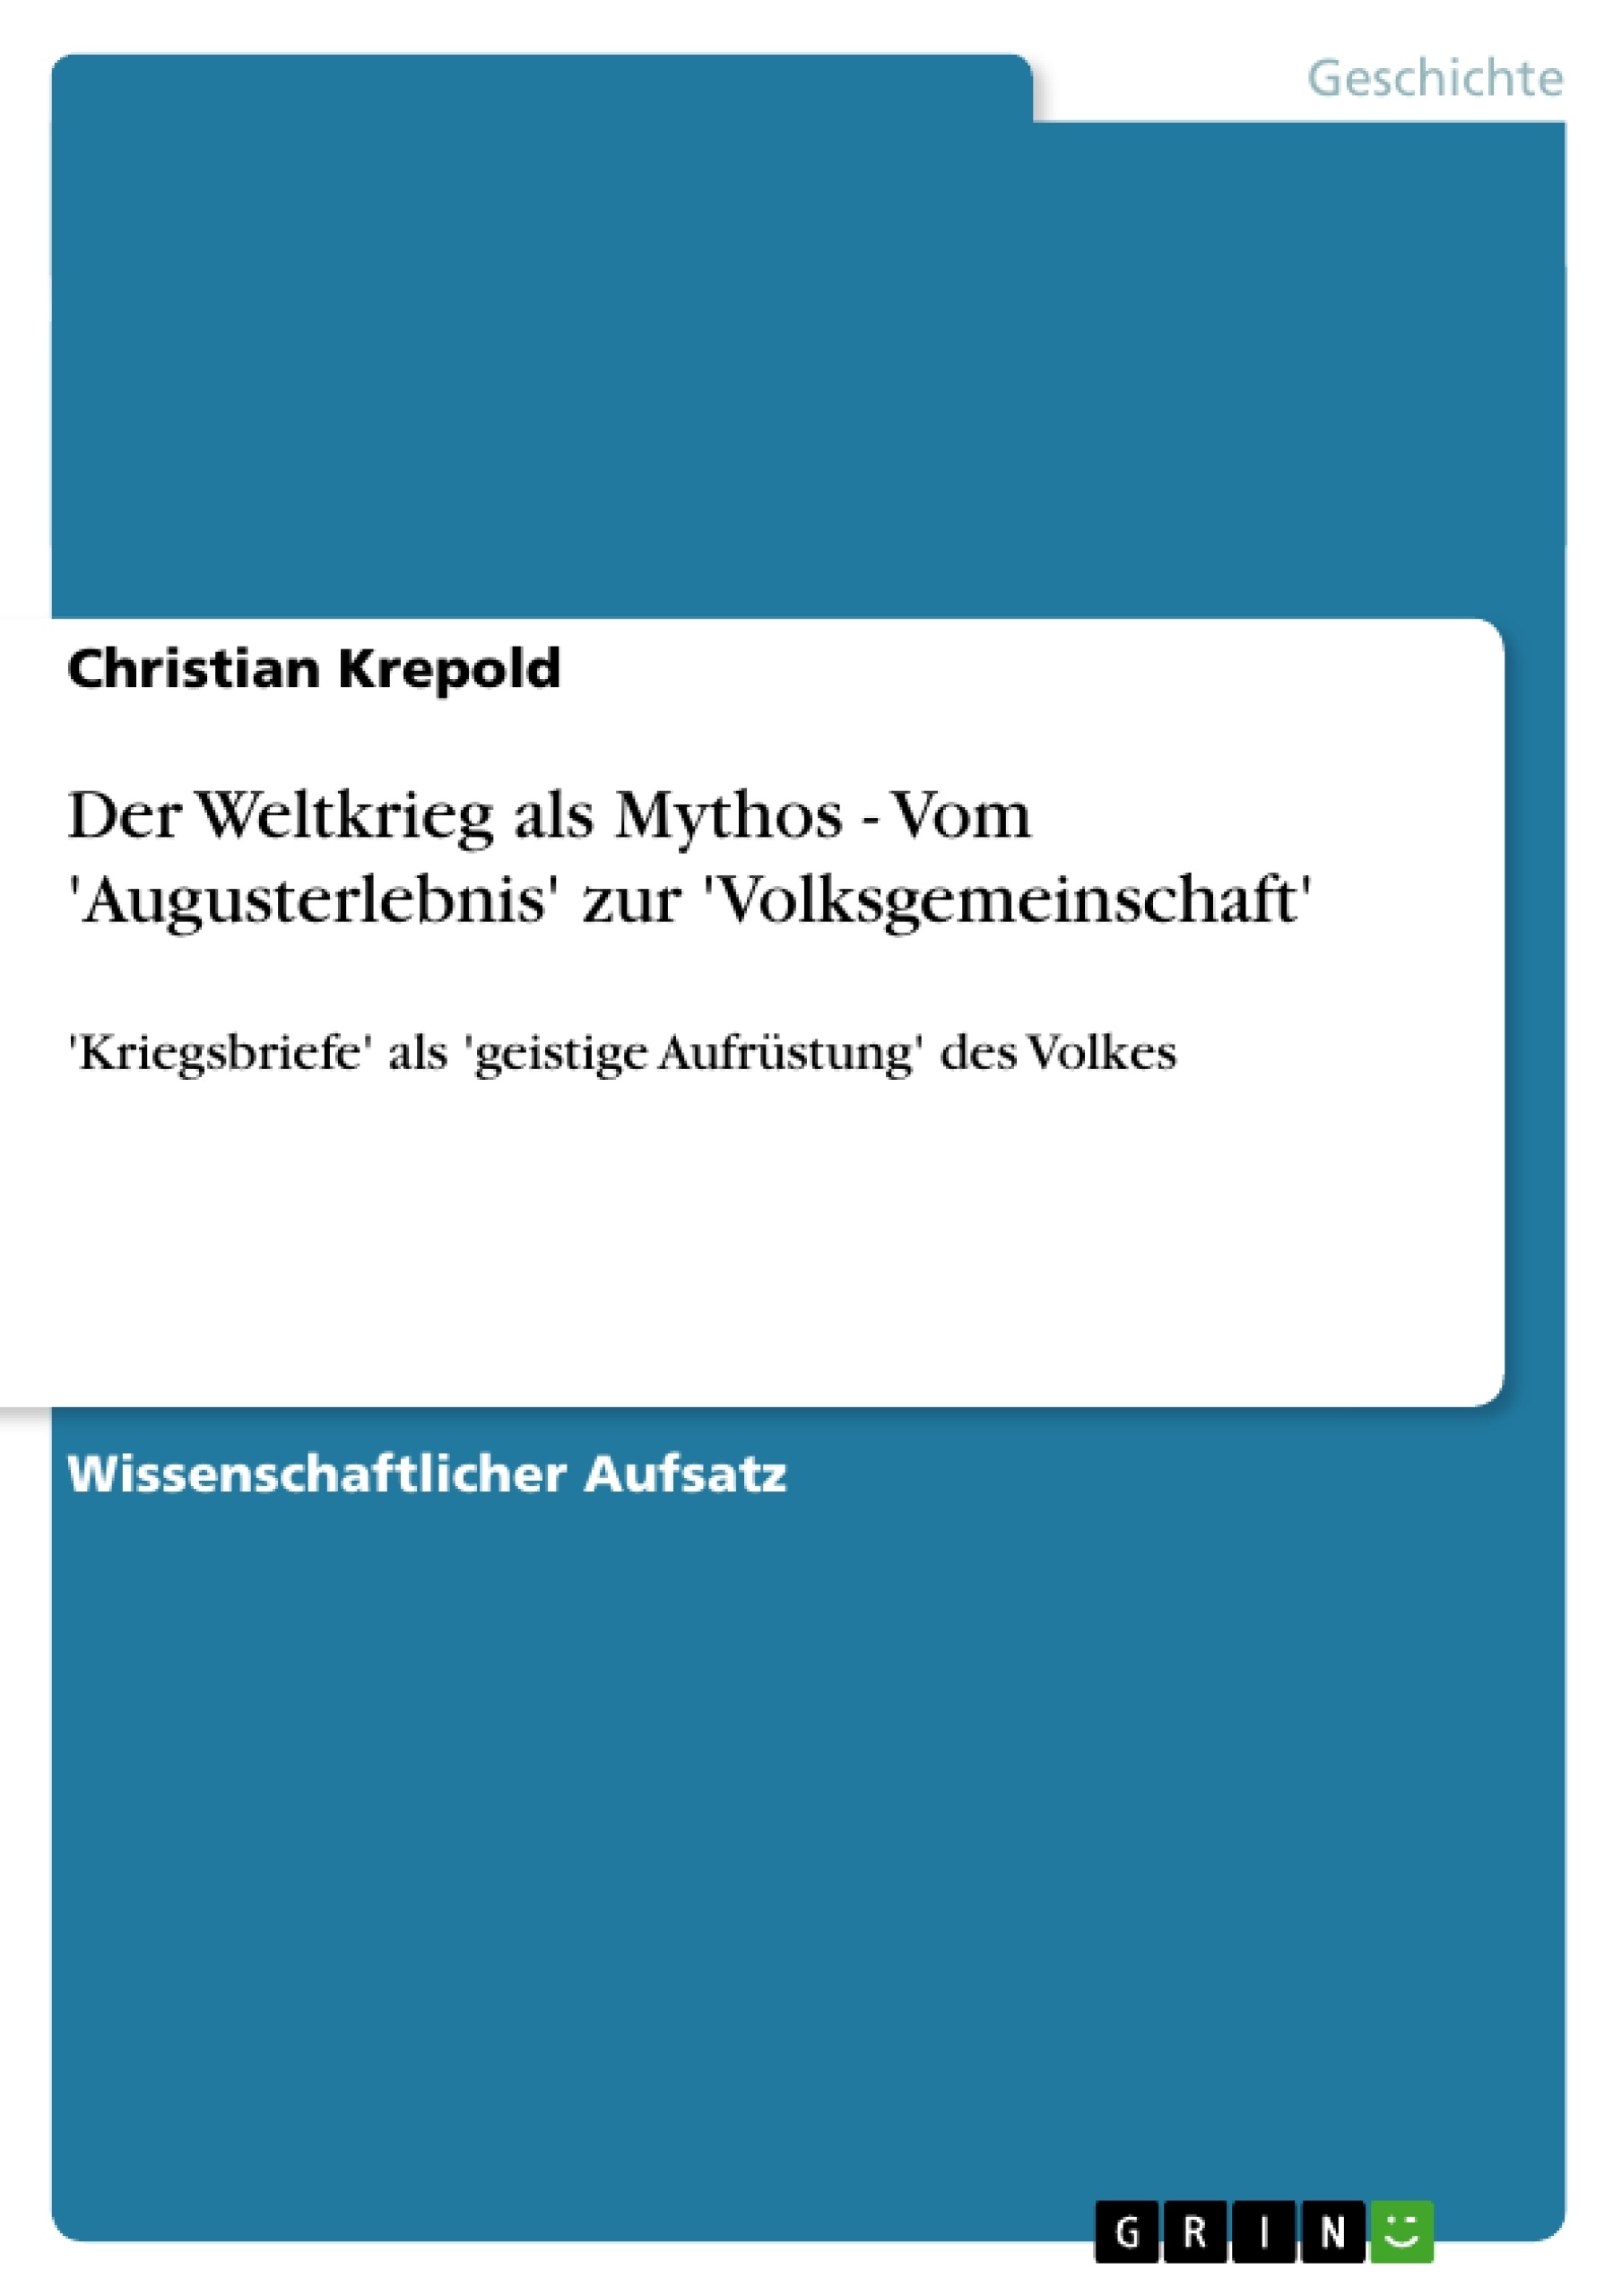 Title: Der Weltkrieg als Mythos - Vom 'Augusterlebnis' zur 'Volksgemeinschaft'